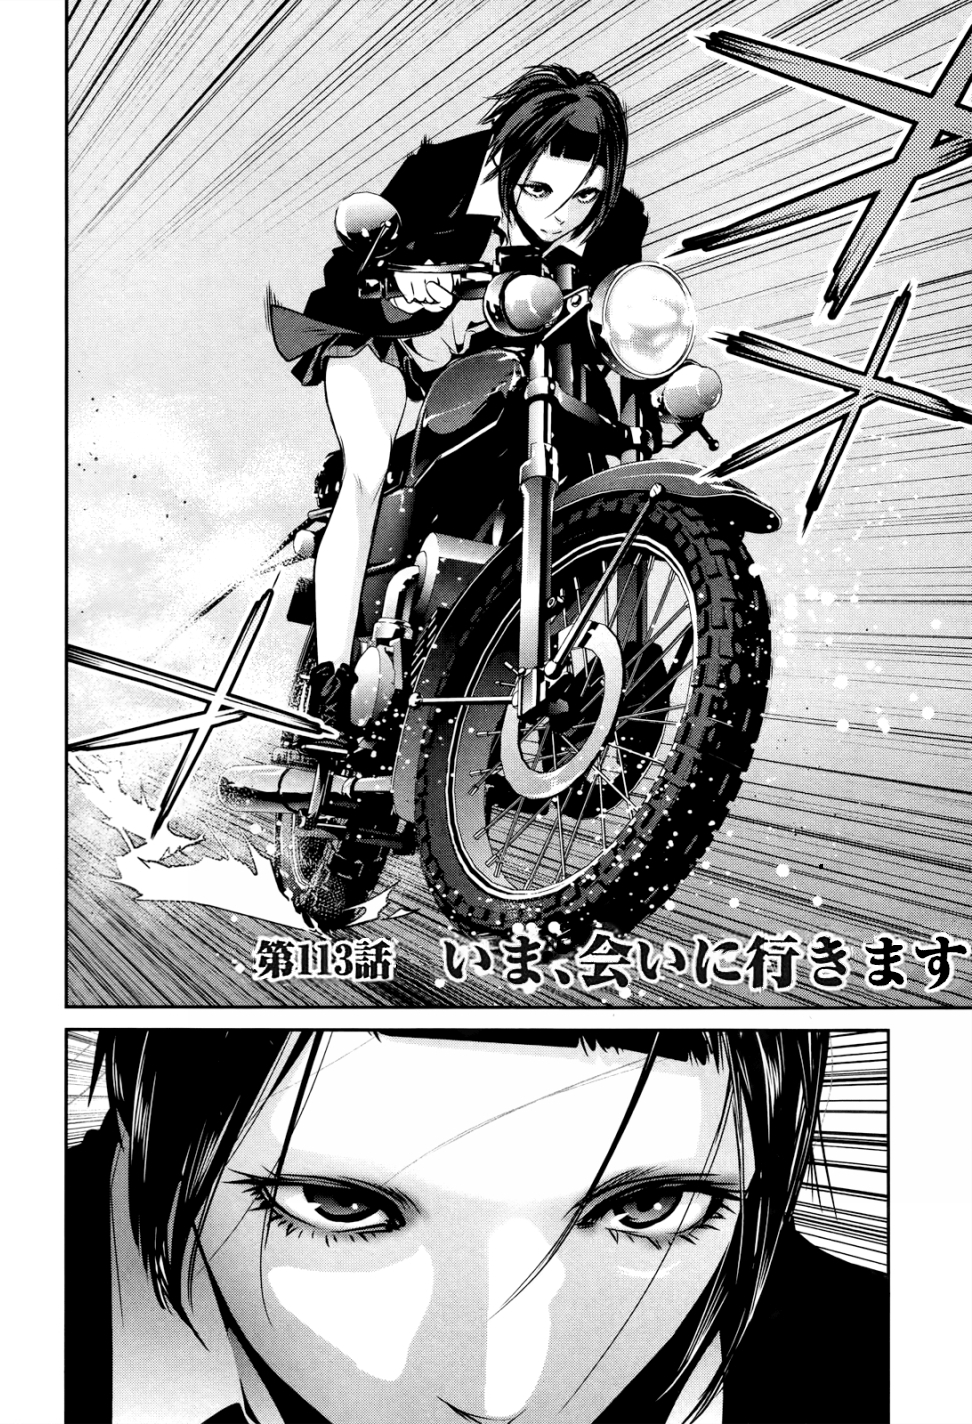 Tomodachi Game Vol.11 Ch.115 Page 3 - Mangago